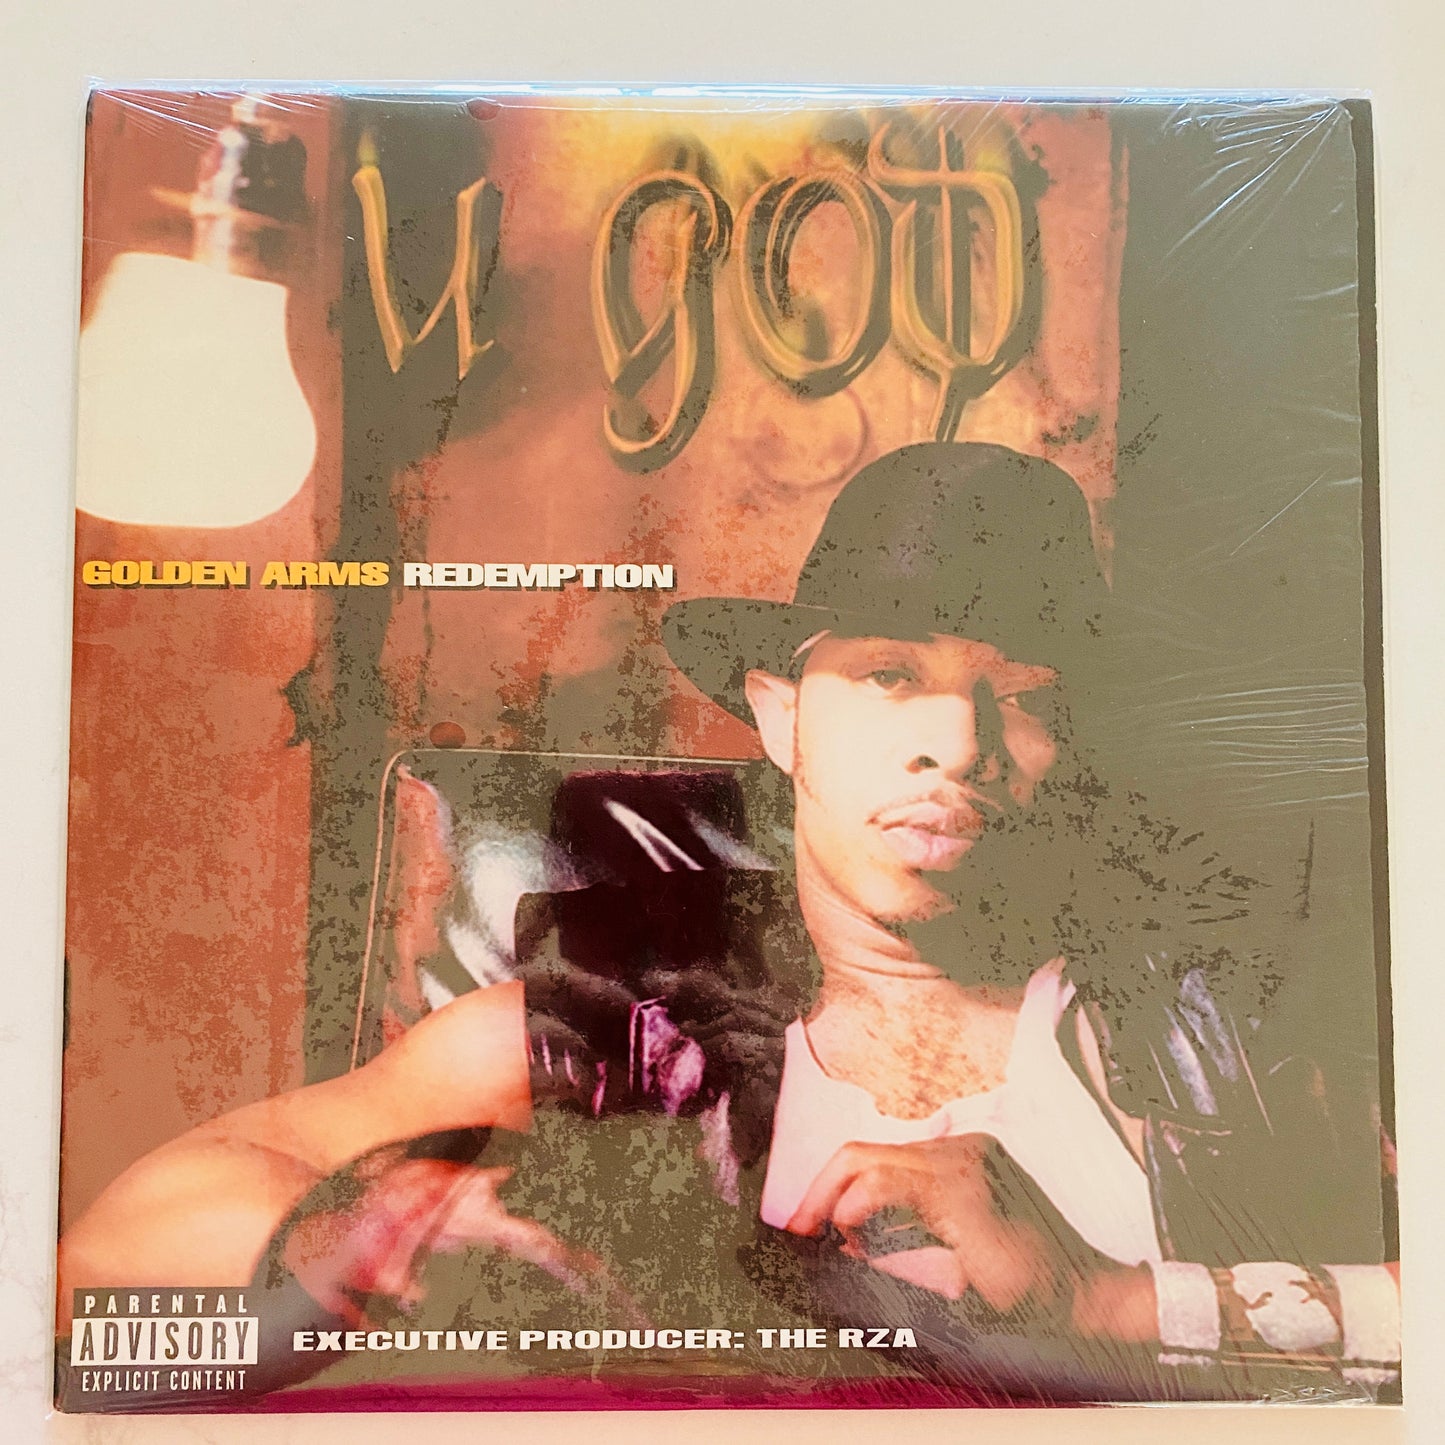 U-God - Golden Arms Redemption (2xLP, Album). HIP-HOP